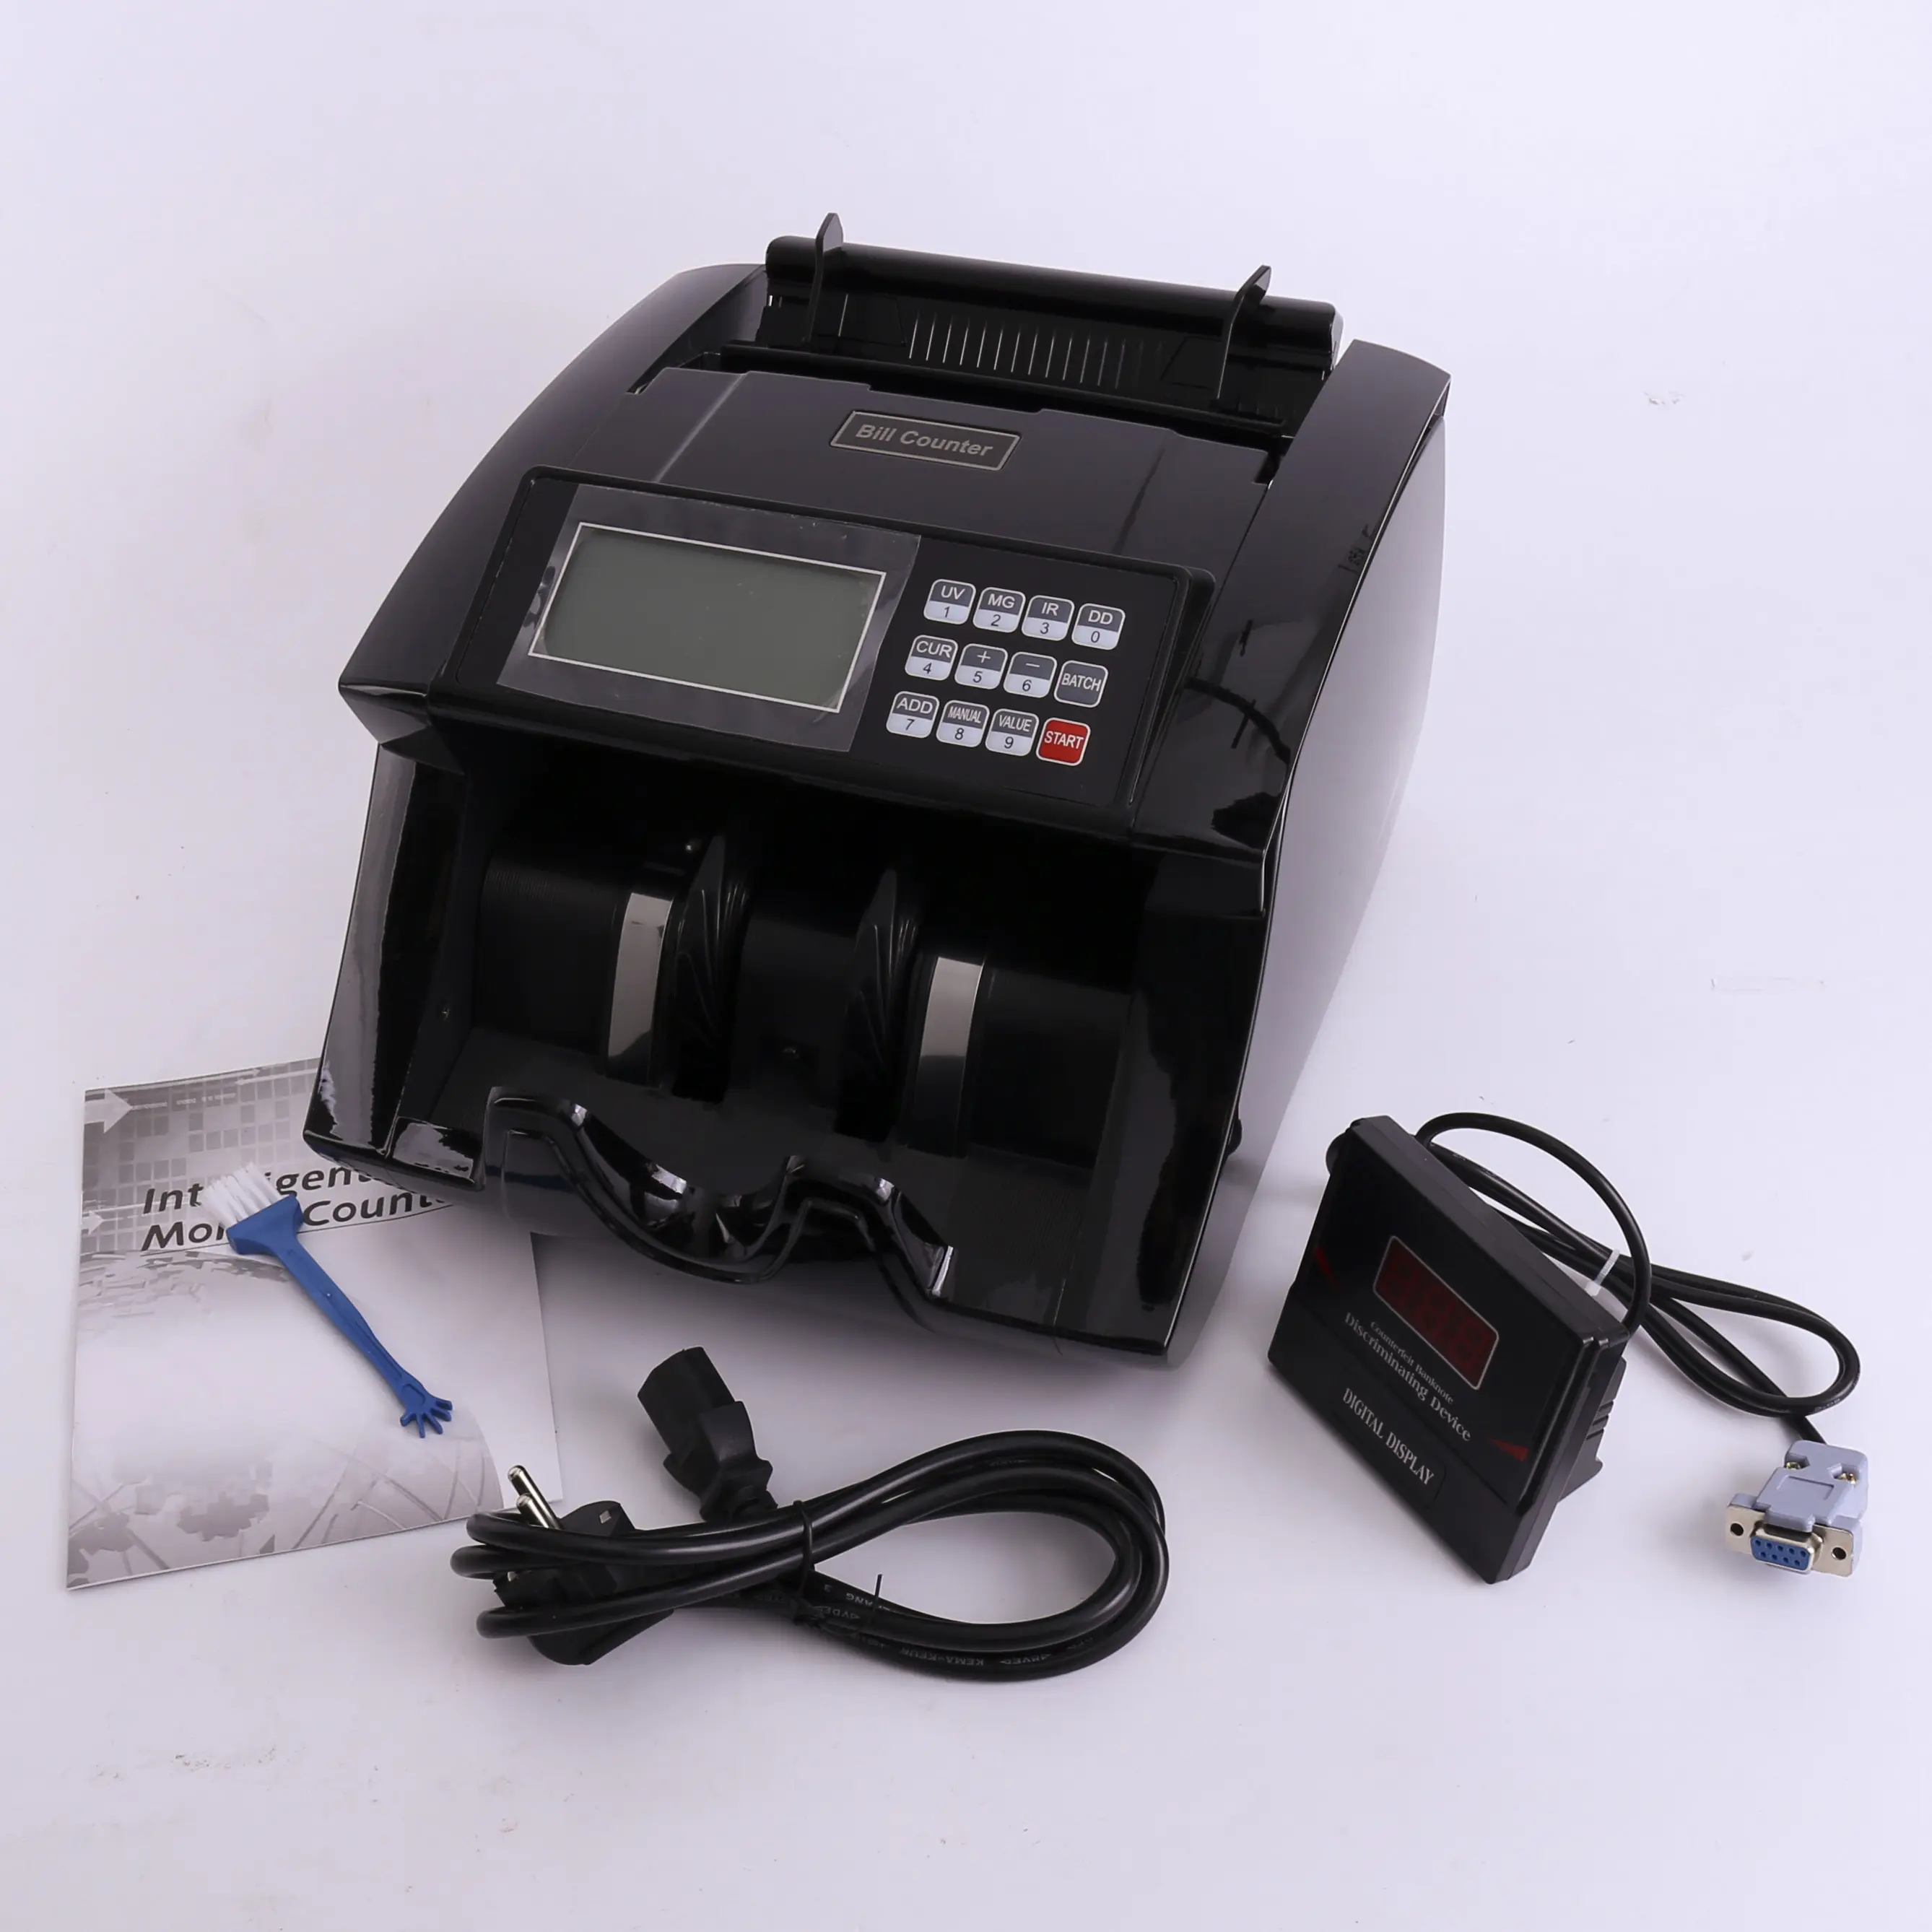 Machine de compteur d'argent avec détecteur de contrefaçon